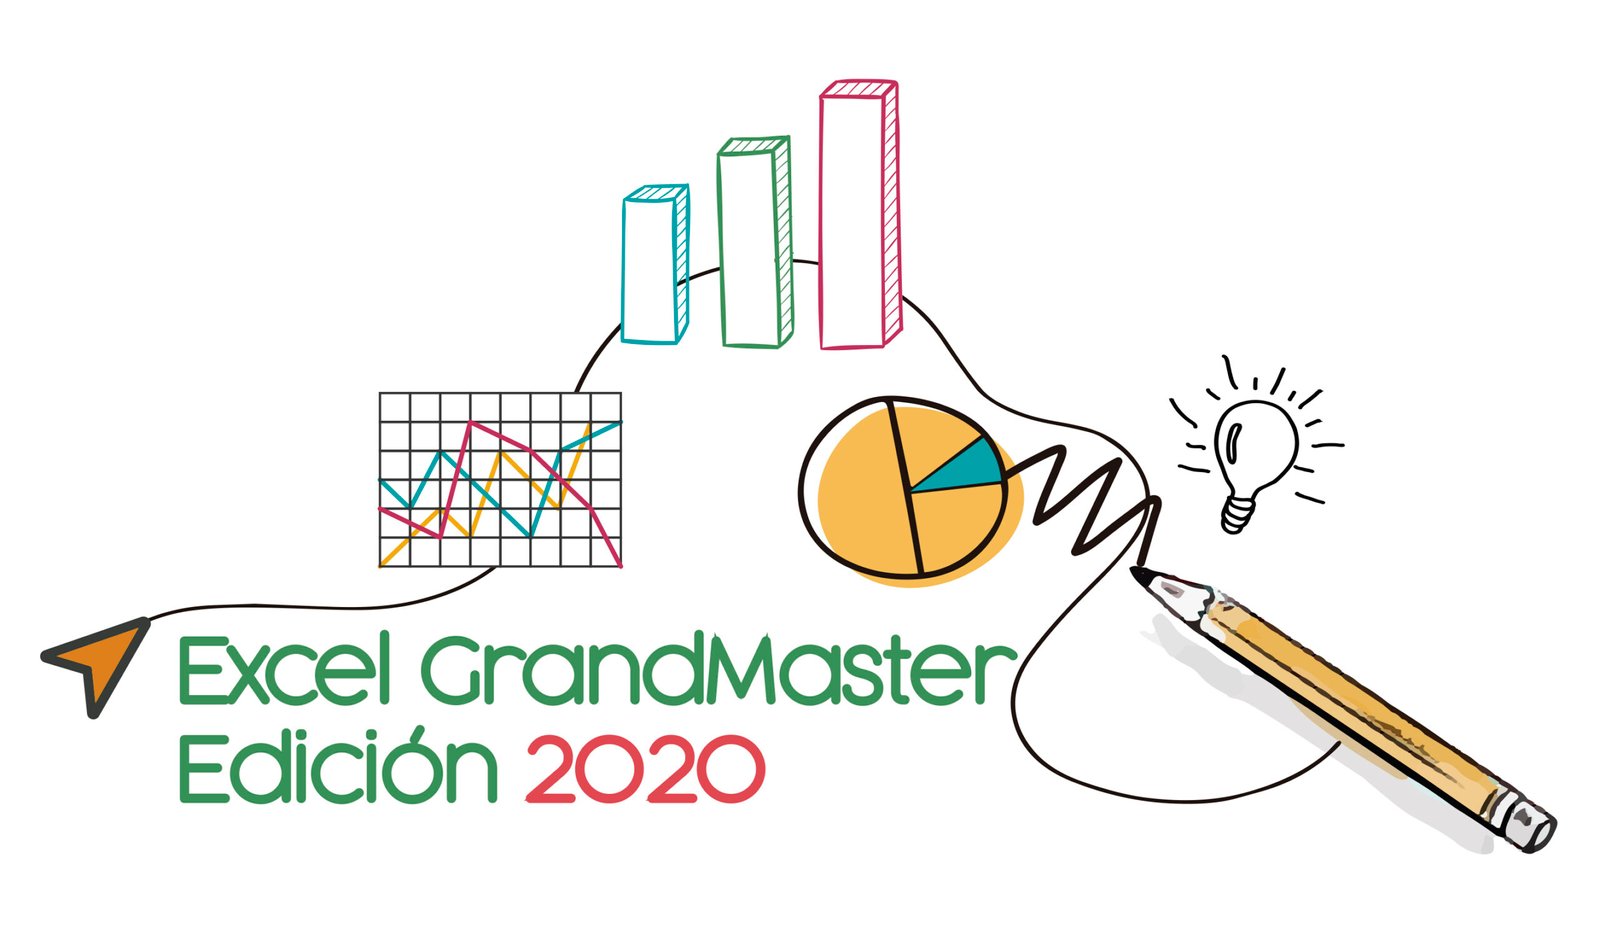 ExcelGrandMaster Edición 2020 | Curso Completo de Excel online🥇